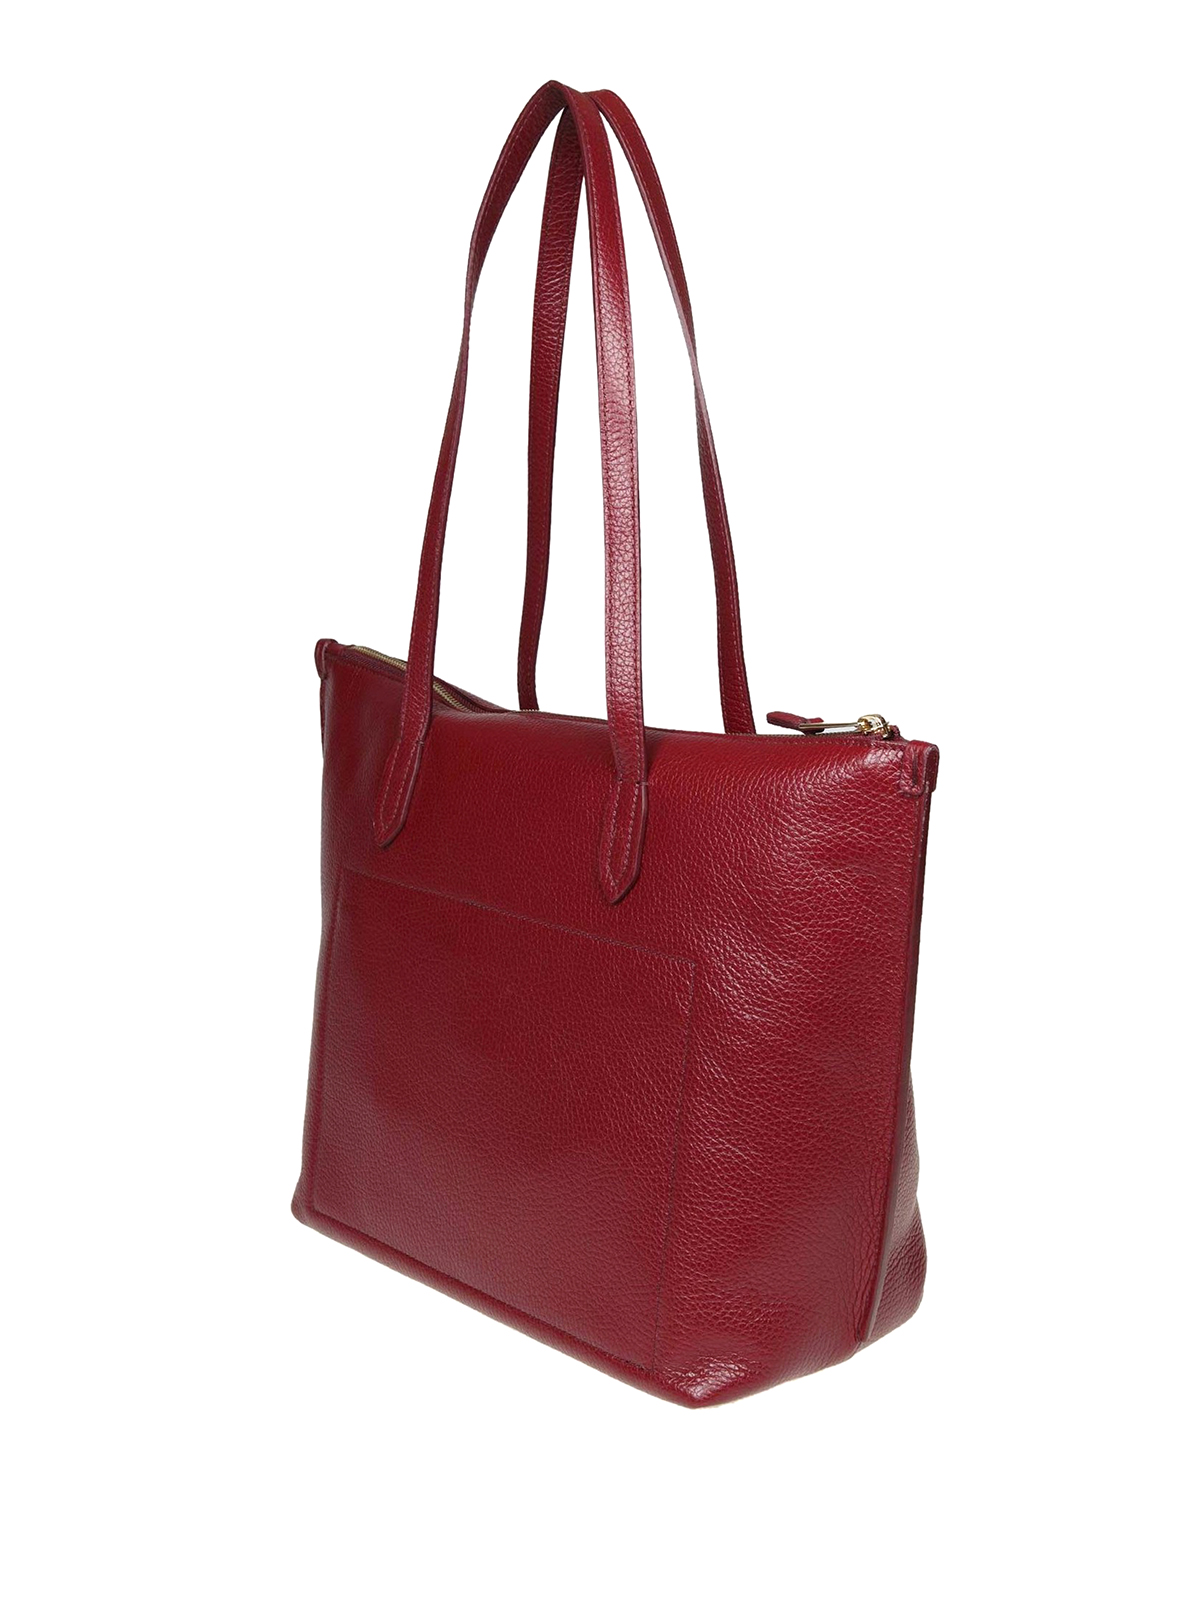 Totes bags Furla - Luce medium tote bag - 1023586 | Shop online at iKRIX